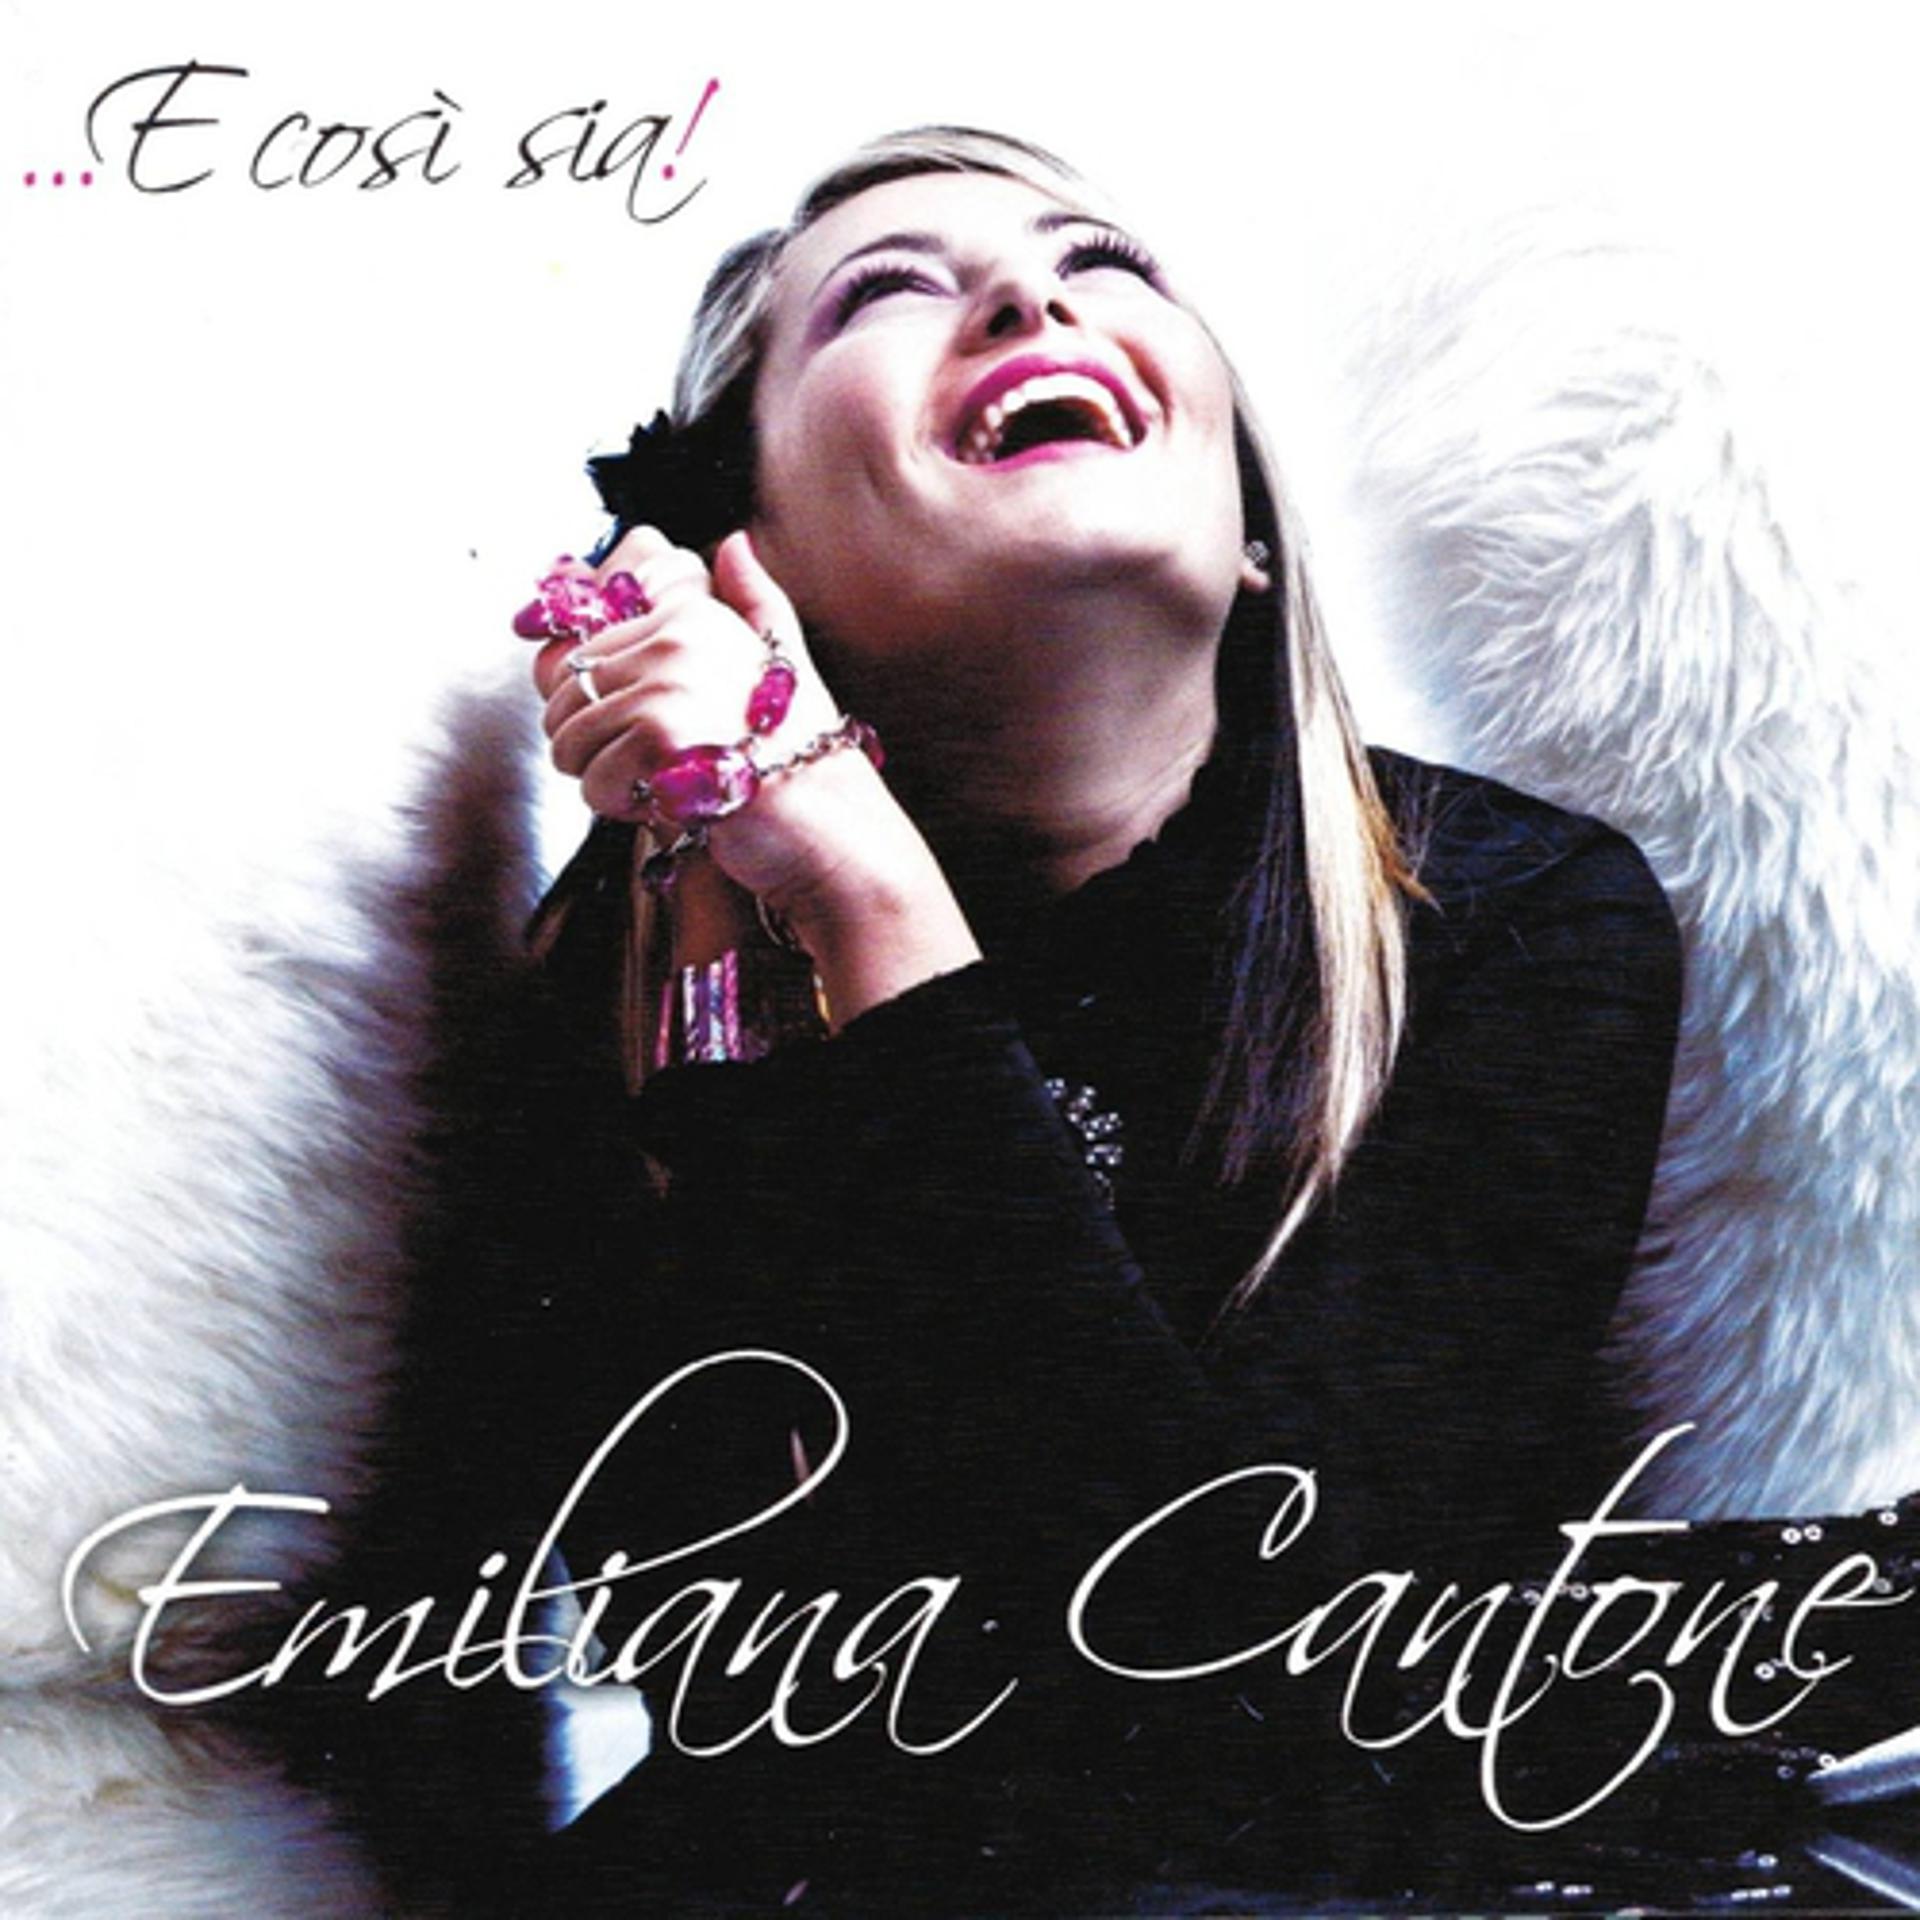 Постер к треку Emiliana Cantone - Dint a ll anema